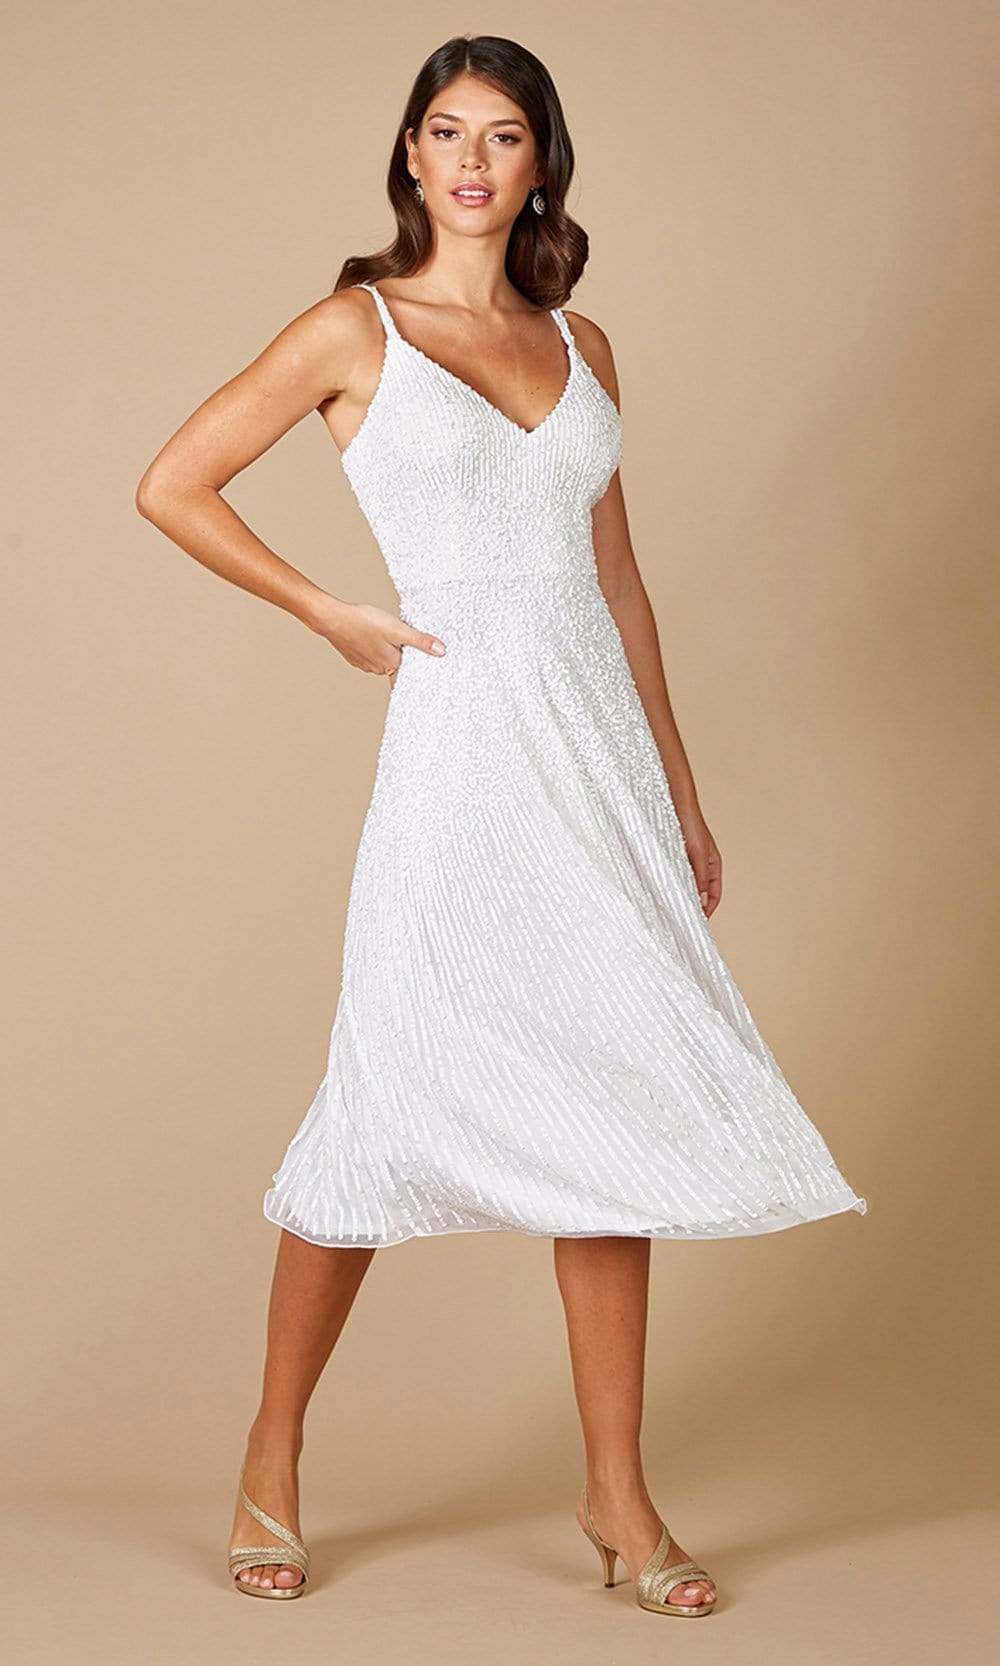 Lara Dresses - 51074 Knee-Length A-Line Evening Dress Wedding Dresses 0 / Ivory